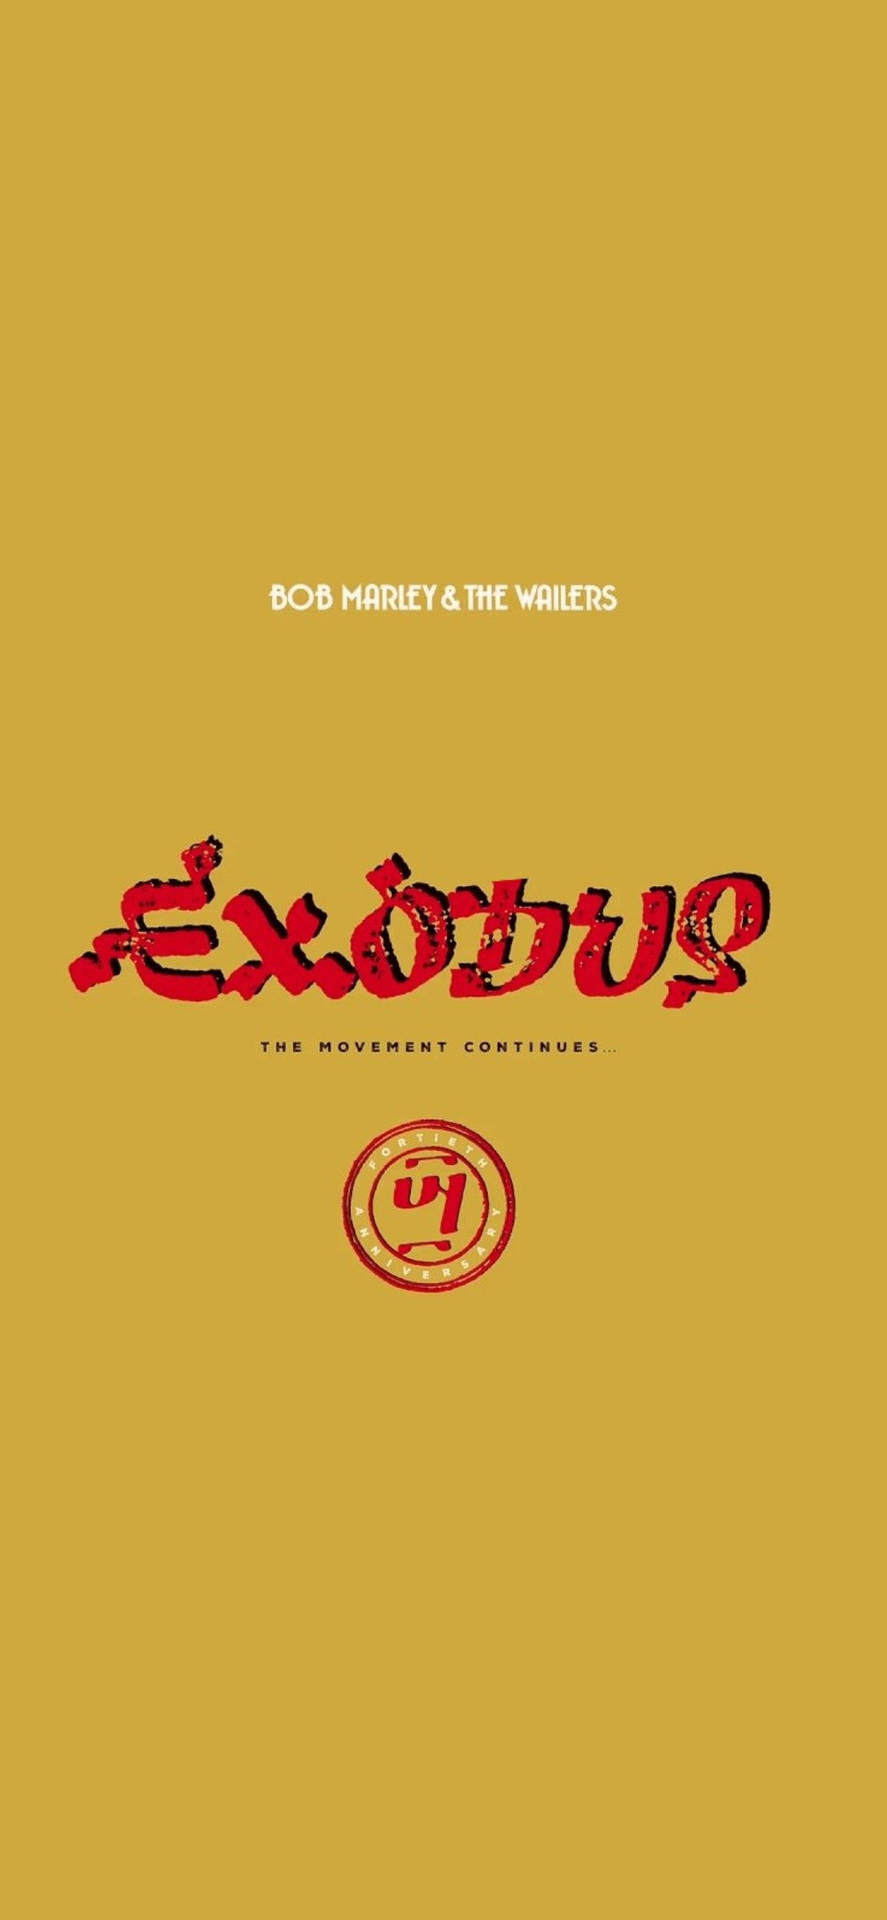 Bobmarley Y The Wailers Álbum Exodus Fondo de pantalla